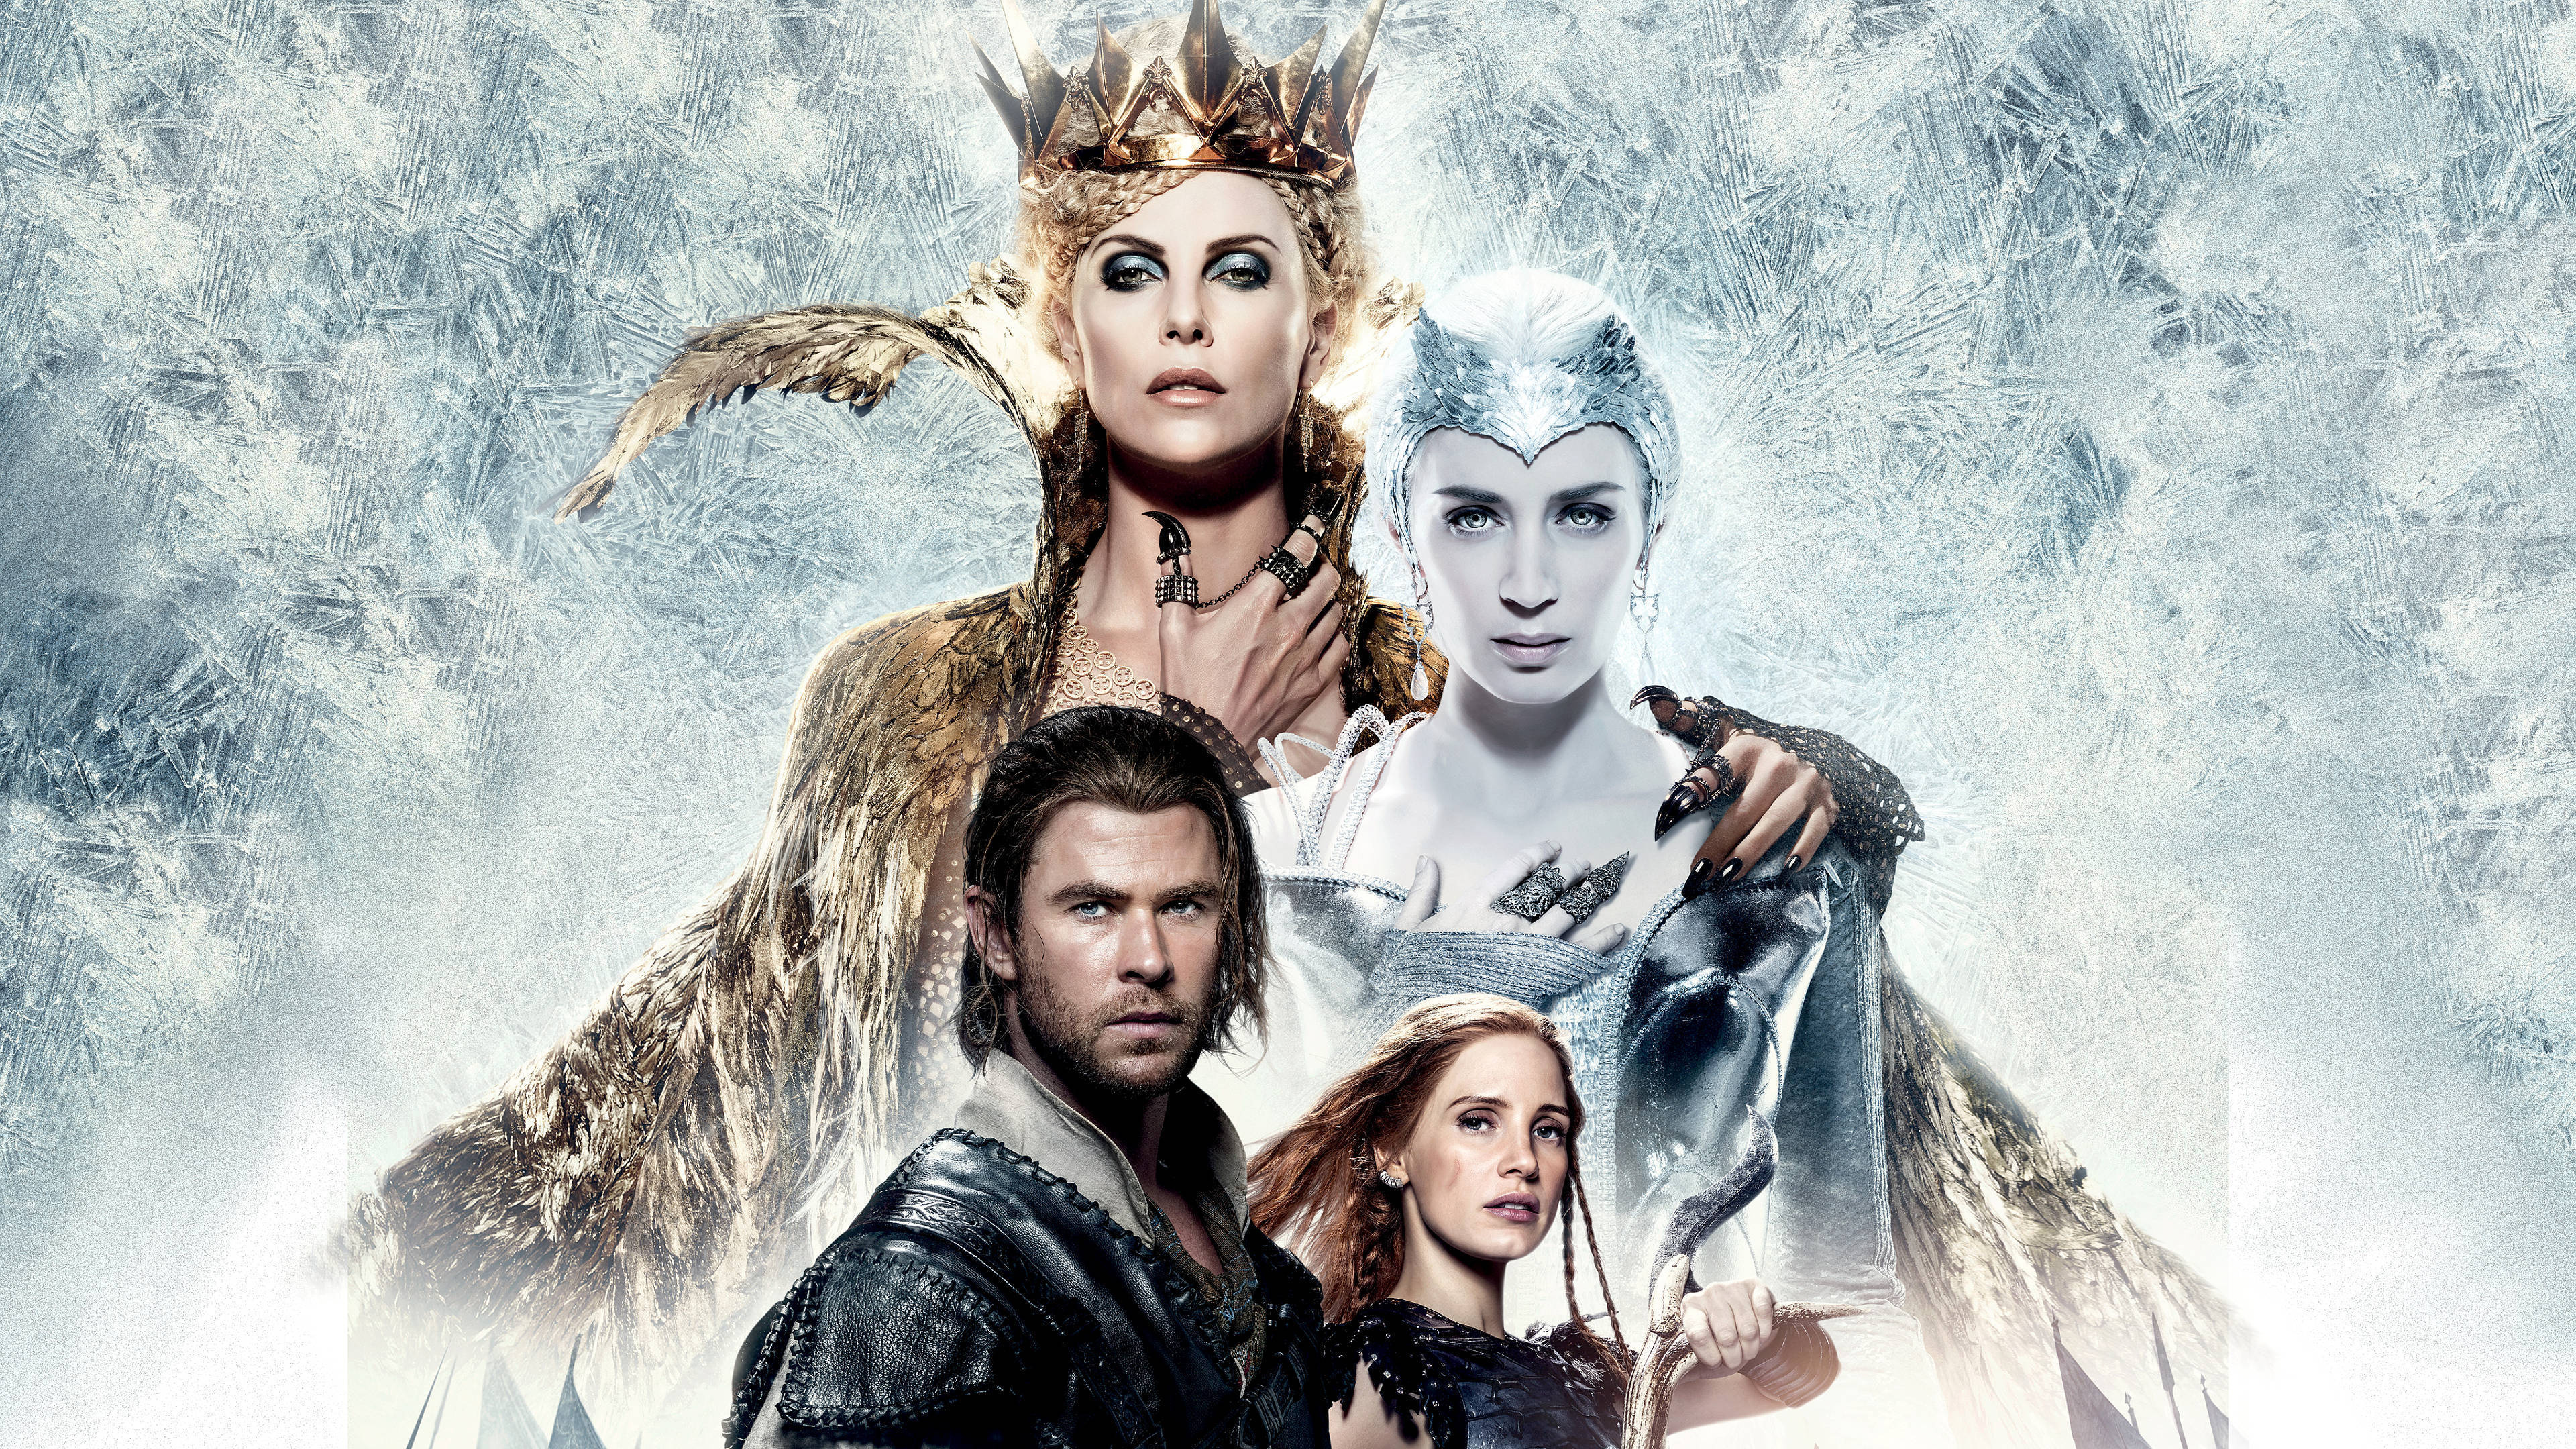 Emily Blunt, Queen Freya, The Huntsman sequel, Movie review, 3840x2160 4K Desktop